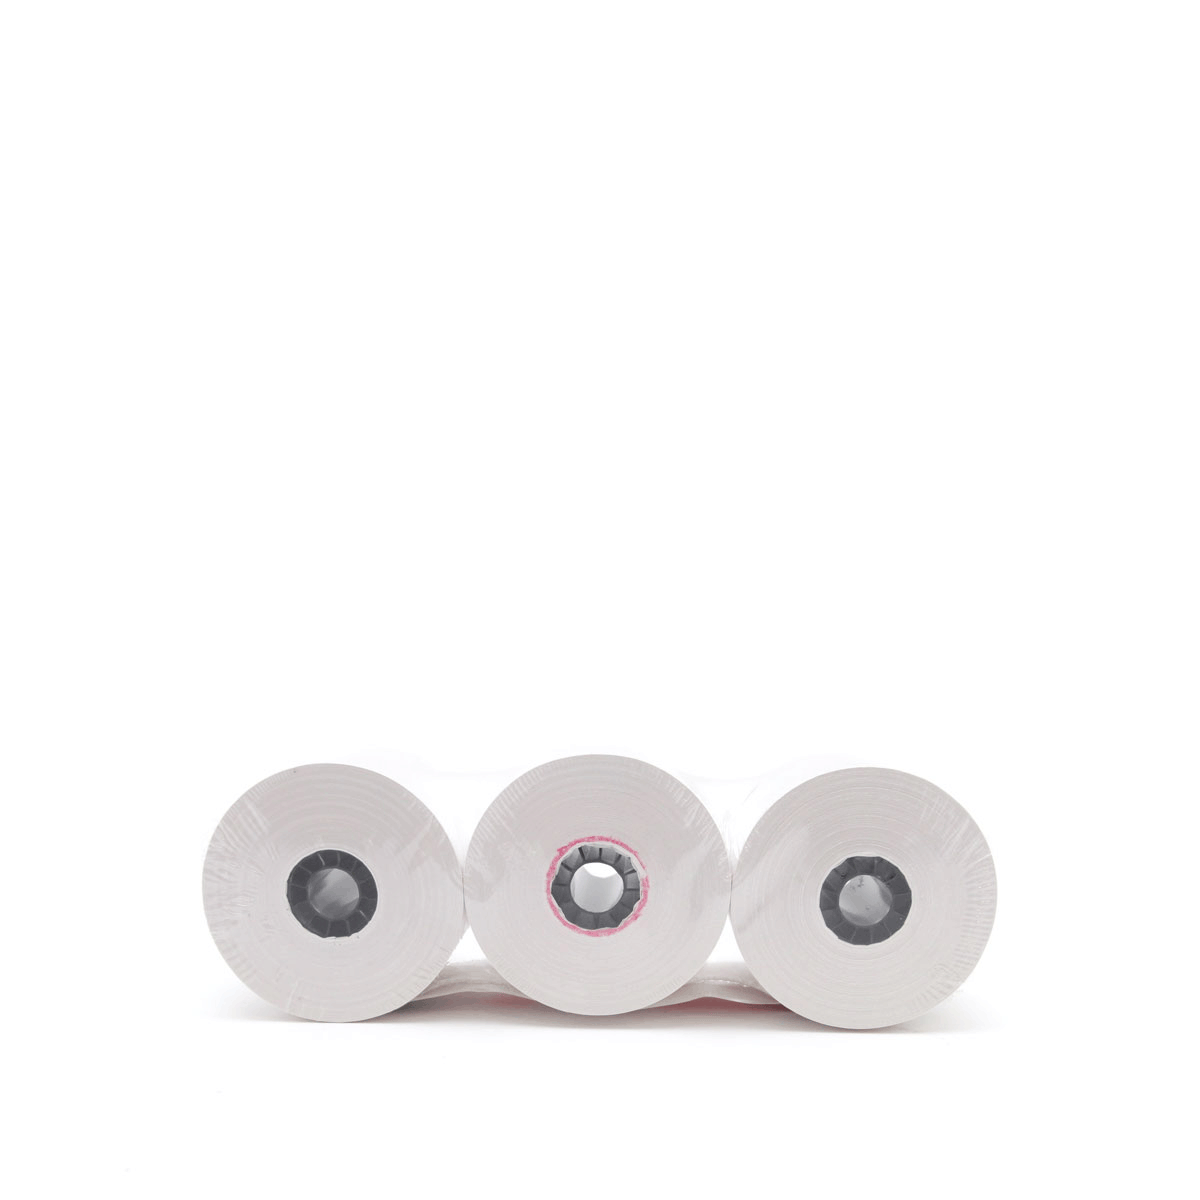 Rollos de Papel Térmico para Impresoras Punto de Venta Office Depot 21802  Blanco Empaque 6 piezas